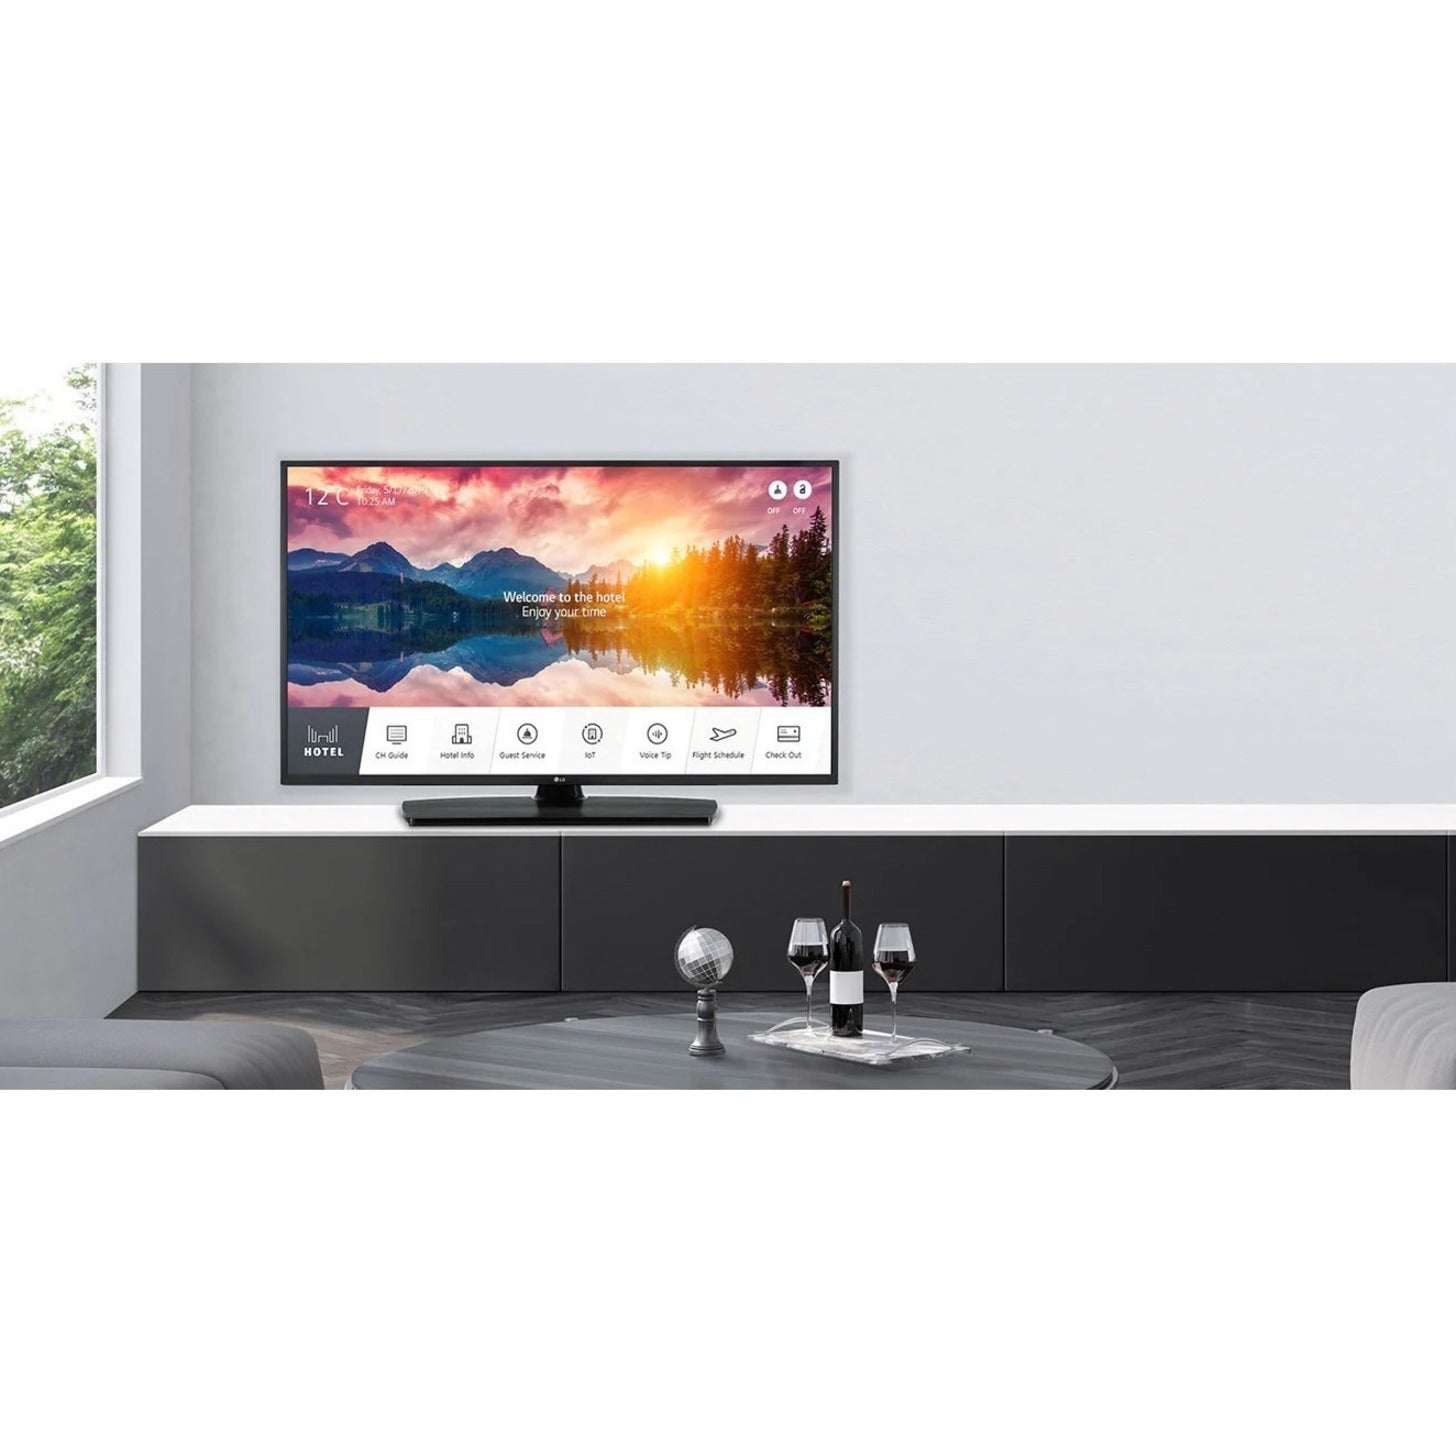 LG US670H 55US670H9UA 55 Smart LED-LCD TV - 4K UHDTV - Ceramic Black